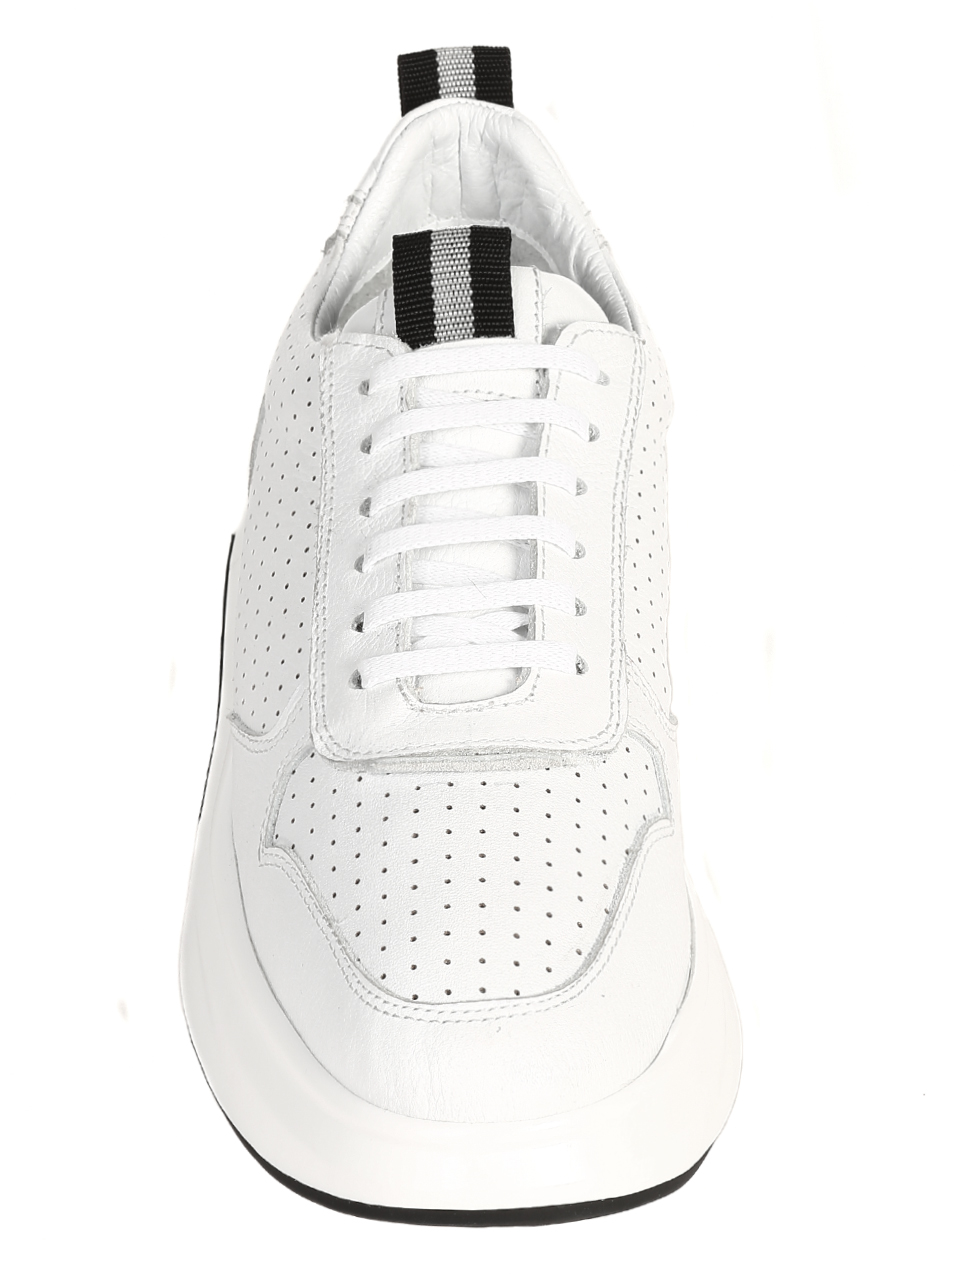 Ежедневни мъжки обувки от естественакожа в бяло 7AT-21283 white